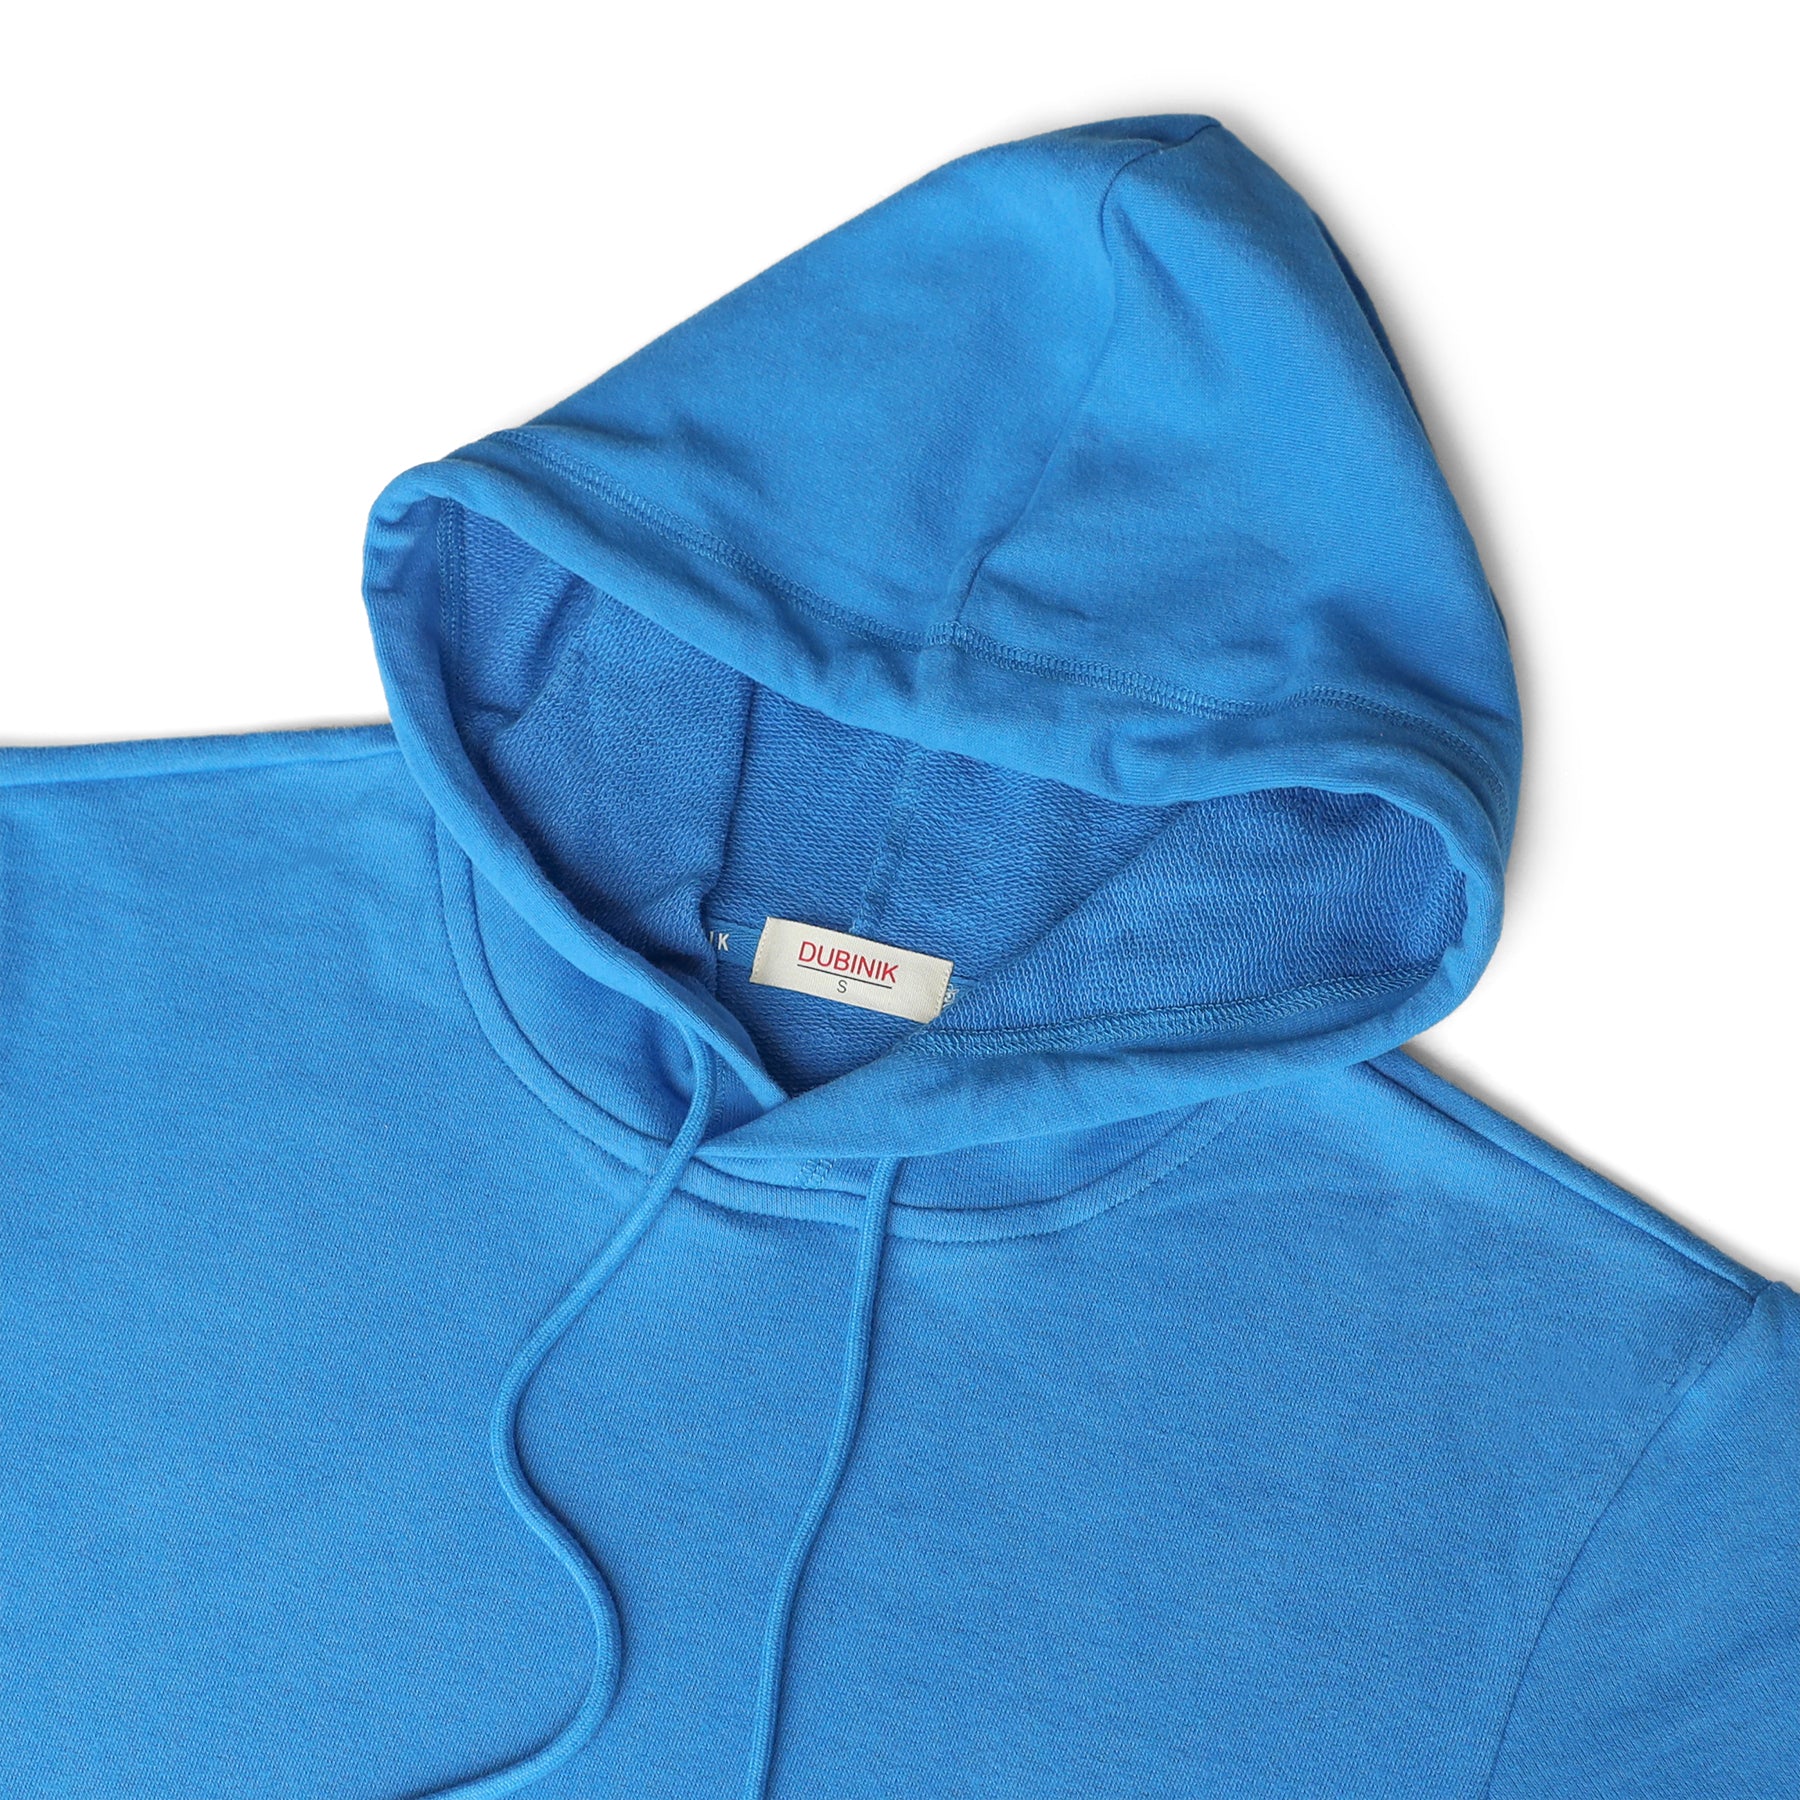 Men's Hoodies short-sleeved hooded sweatshirt #0610